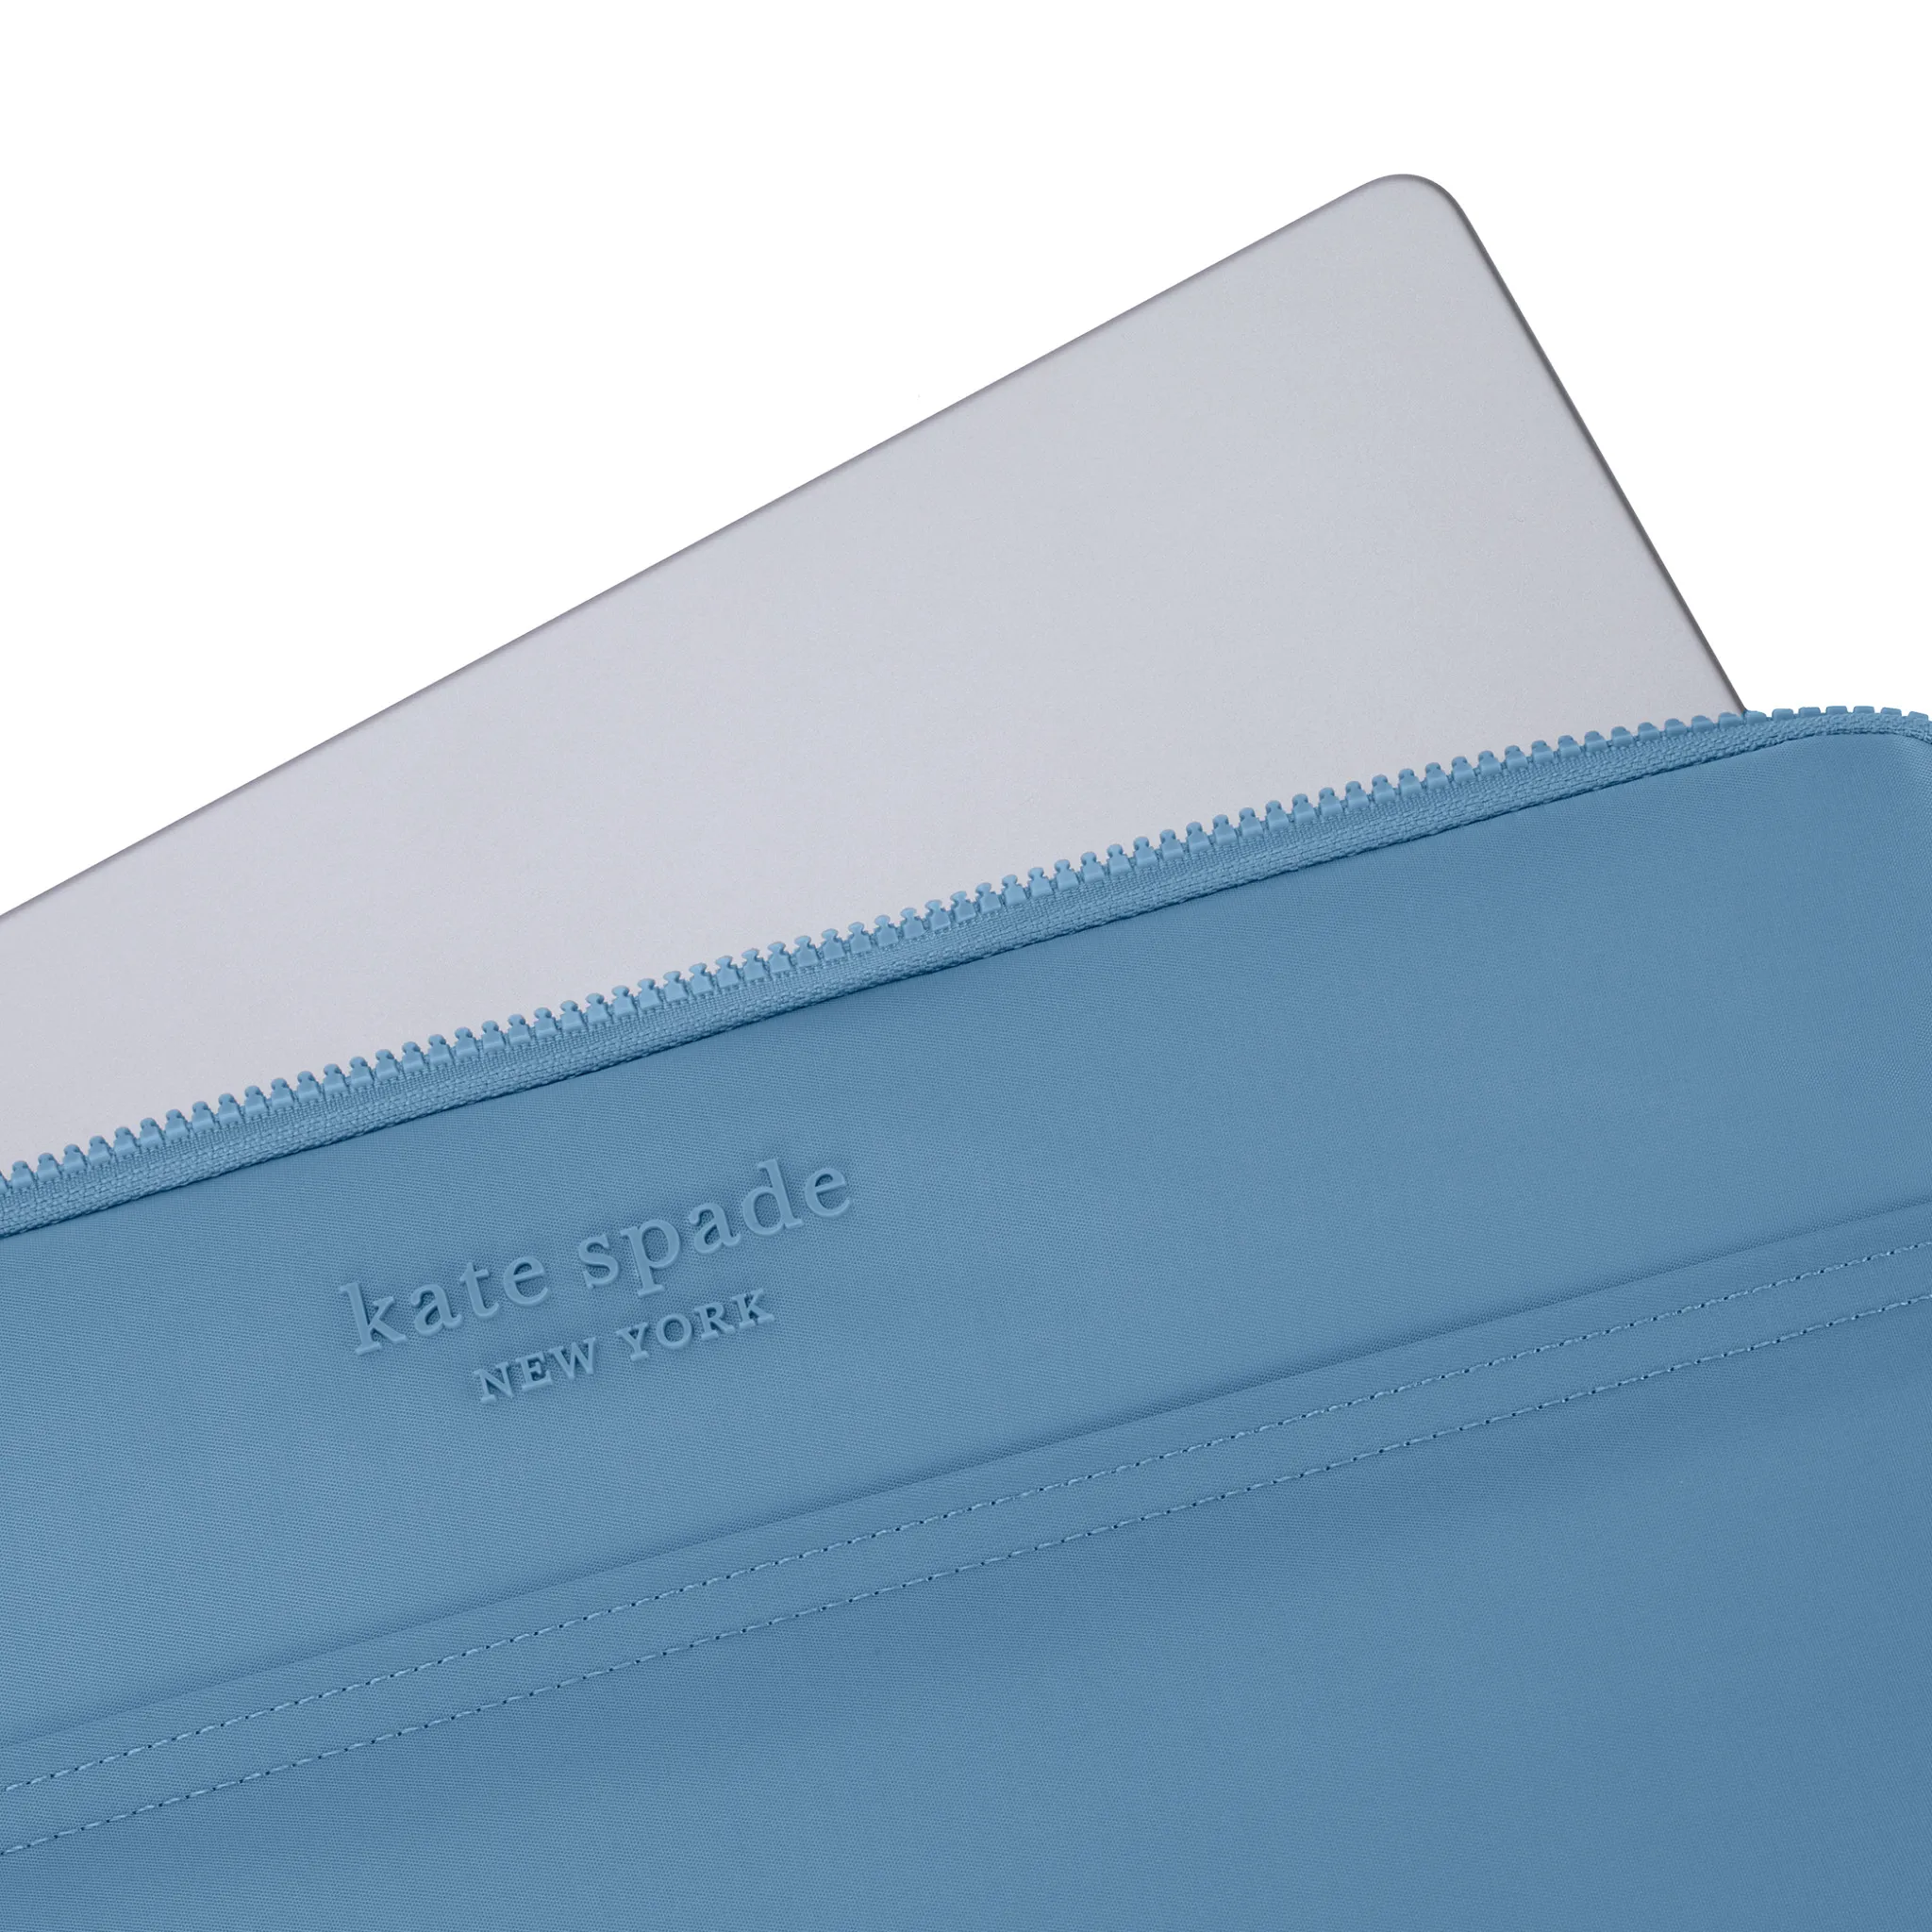 ซองใส่แล็ปท็อป Kate Spade New York รุ่น Puffer Sleeve - 14 inch Laptop - ลาย Dusty Blue